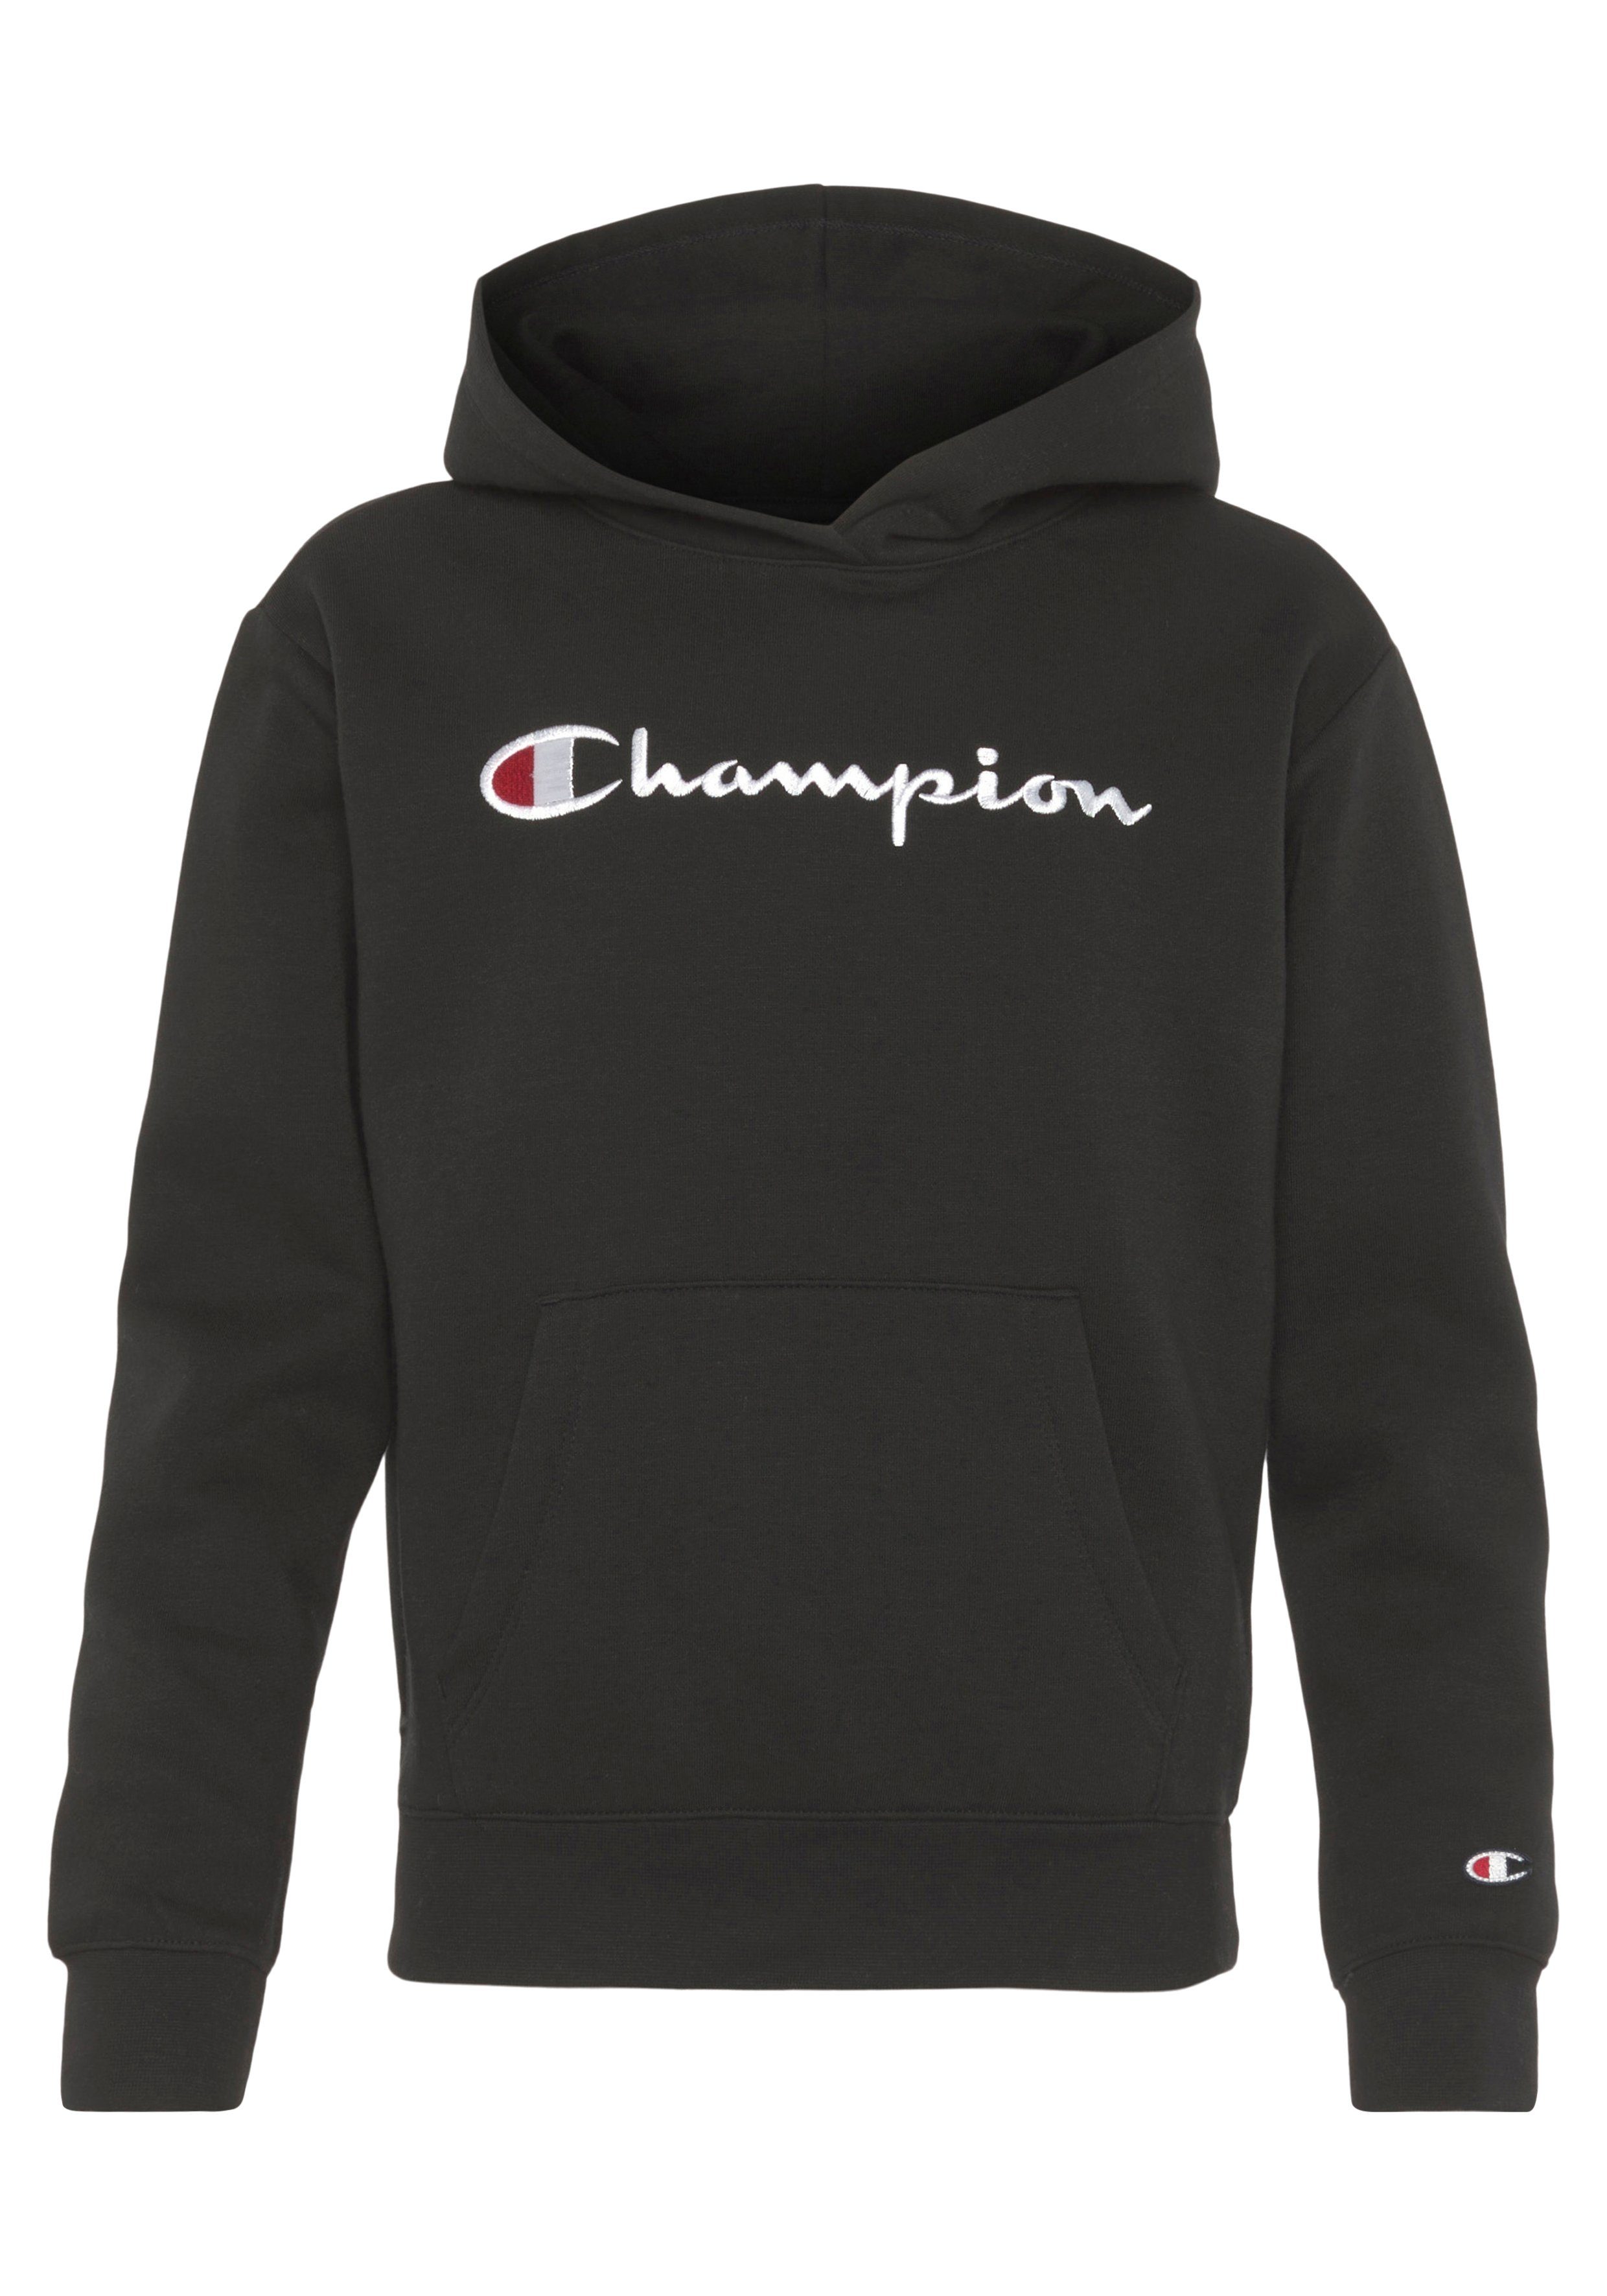 Versandkostenfreies Fest ✶ Im Gange! Champion Sweatshirt schwarz Kinder - Sweatshirt Classic Logo Hooded large für